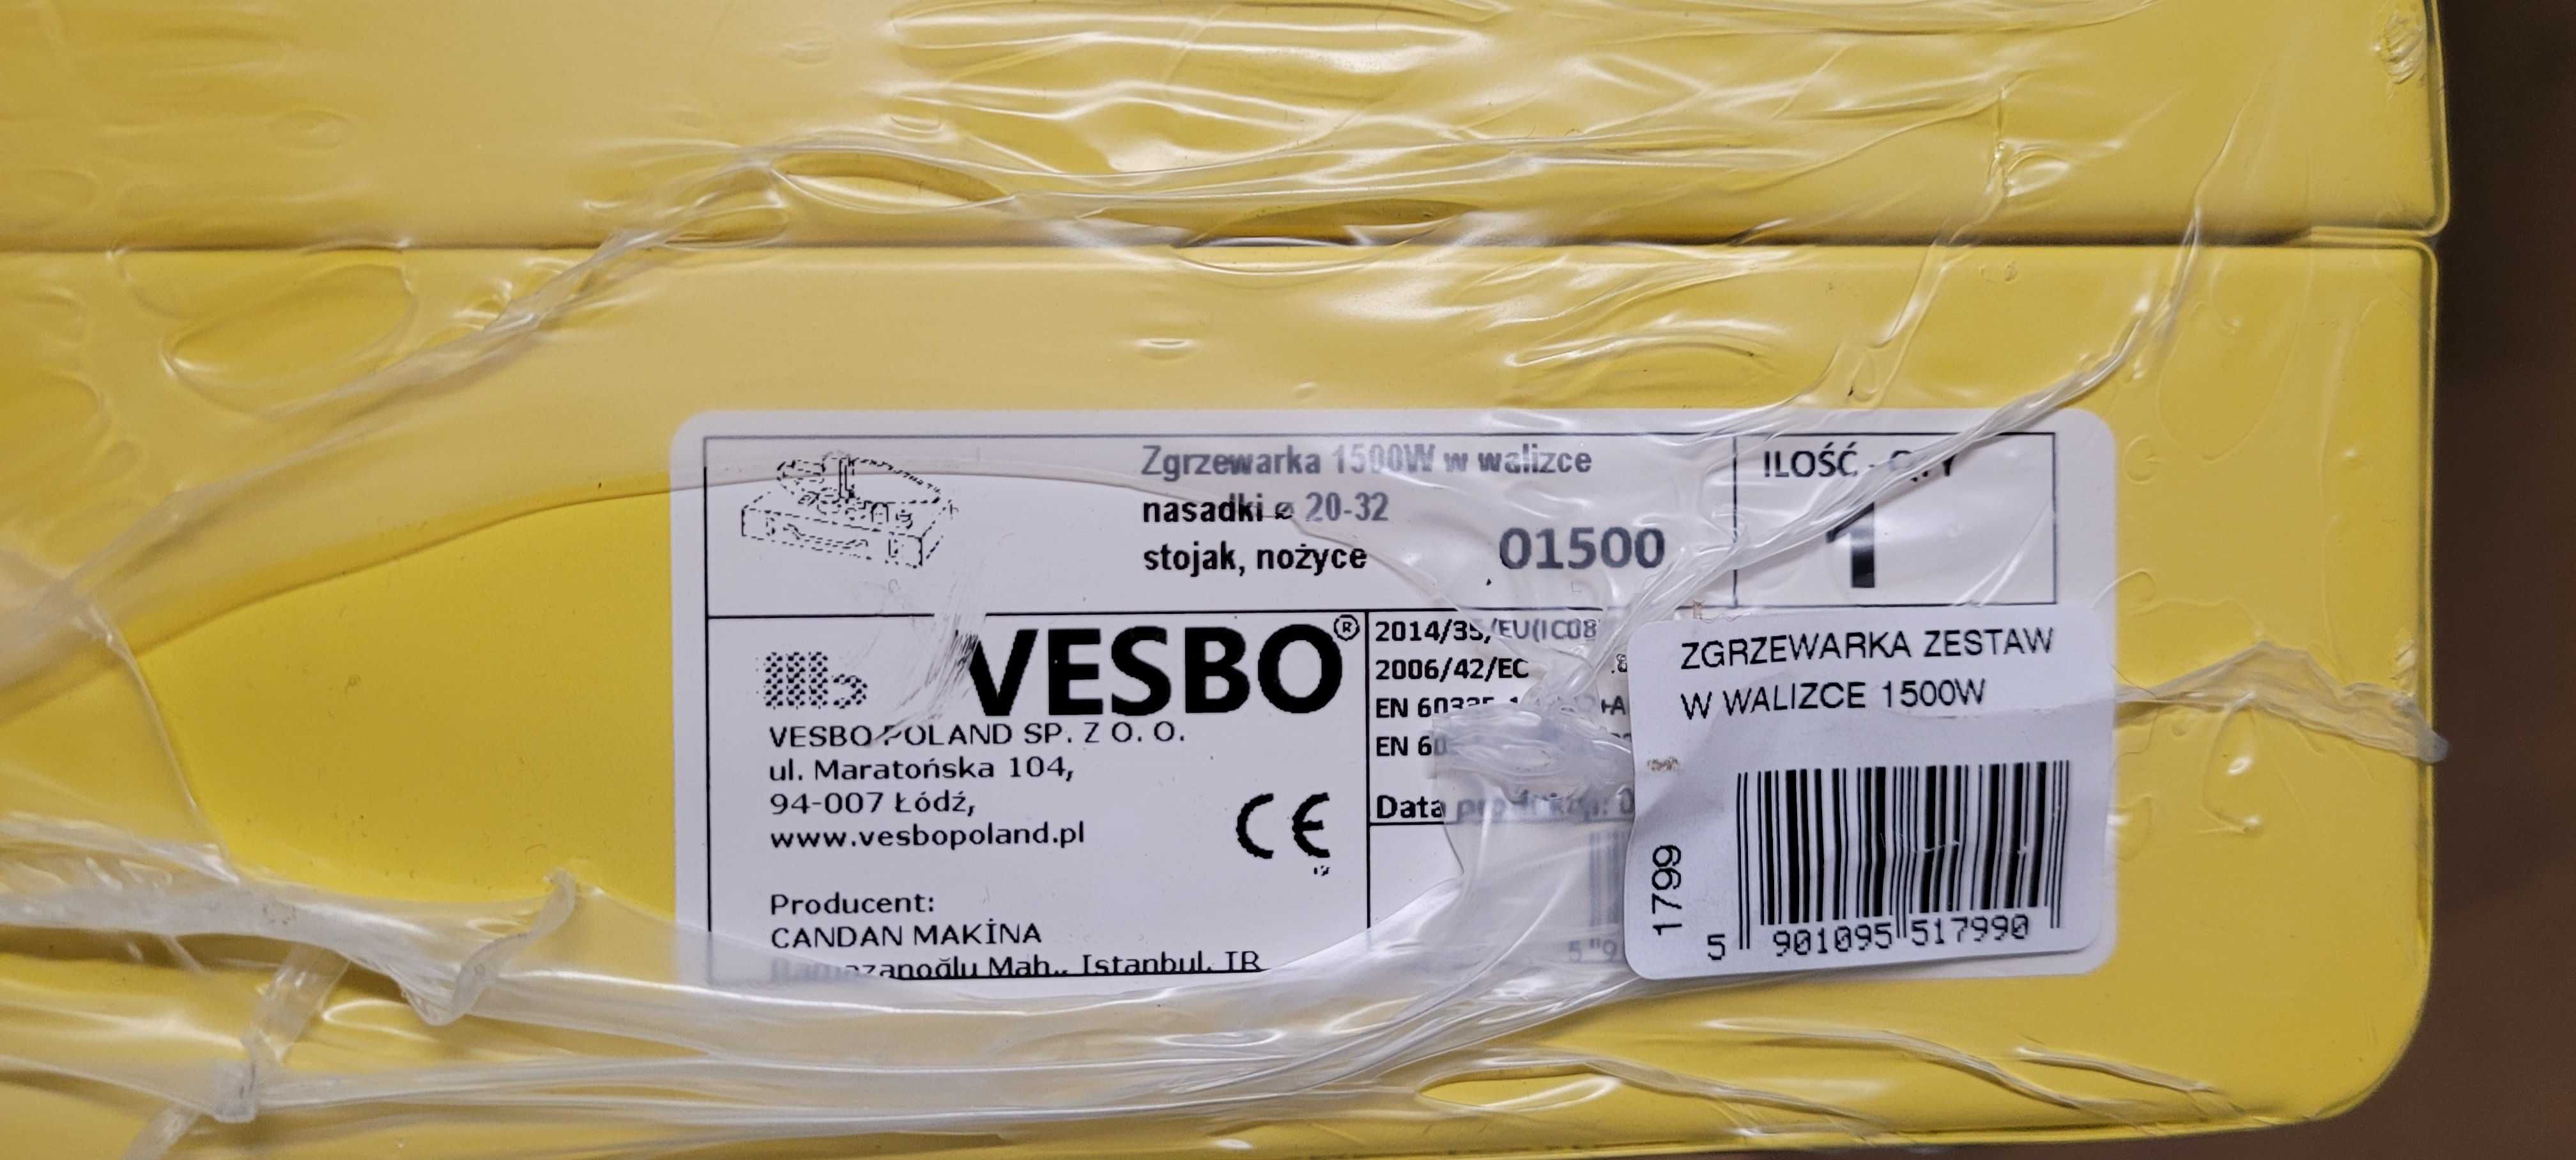 Zgrzewarka Vesbo 1500 W 01500